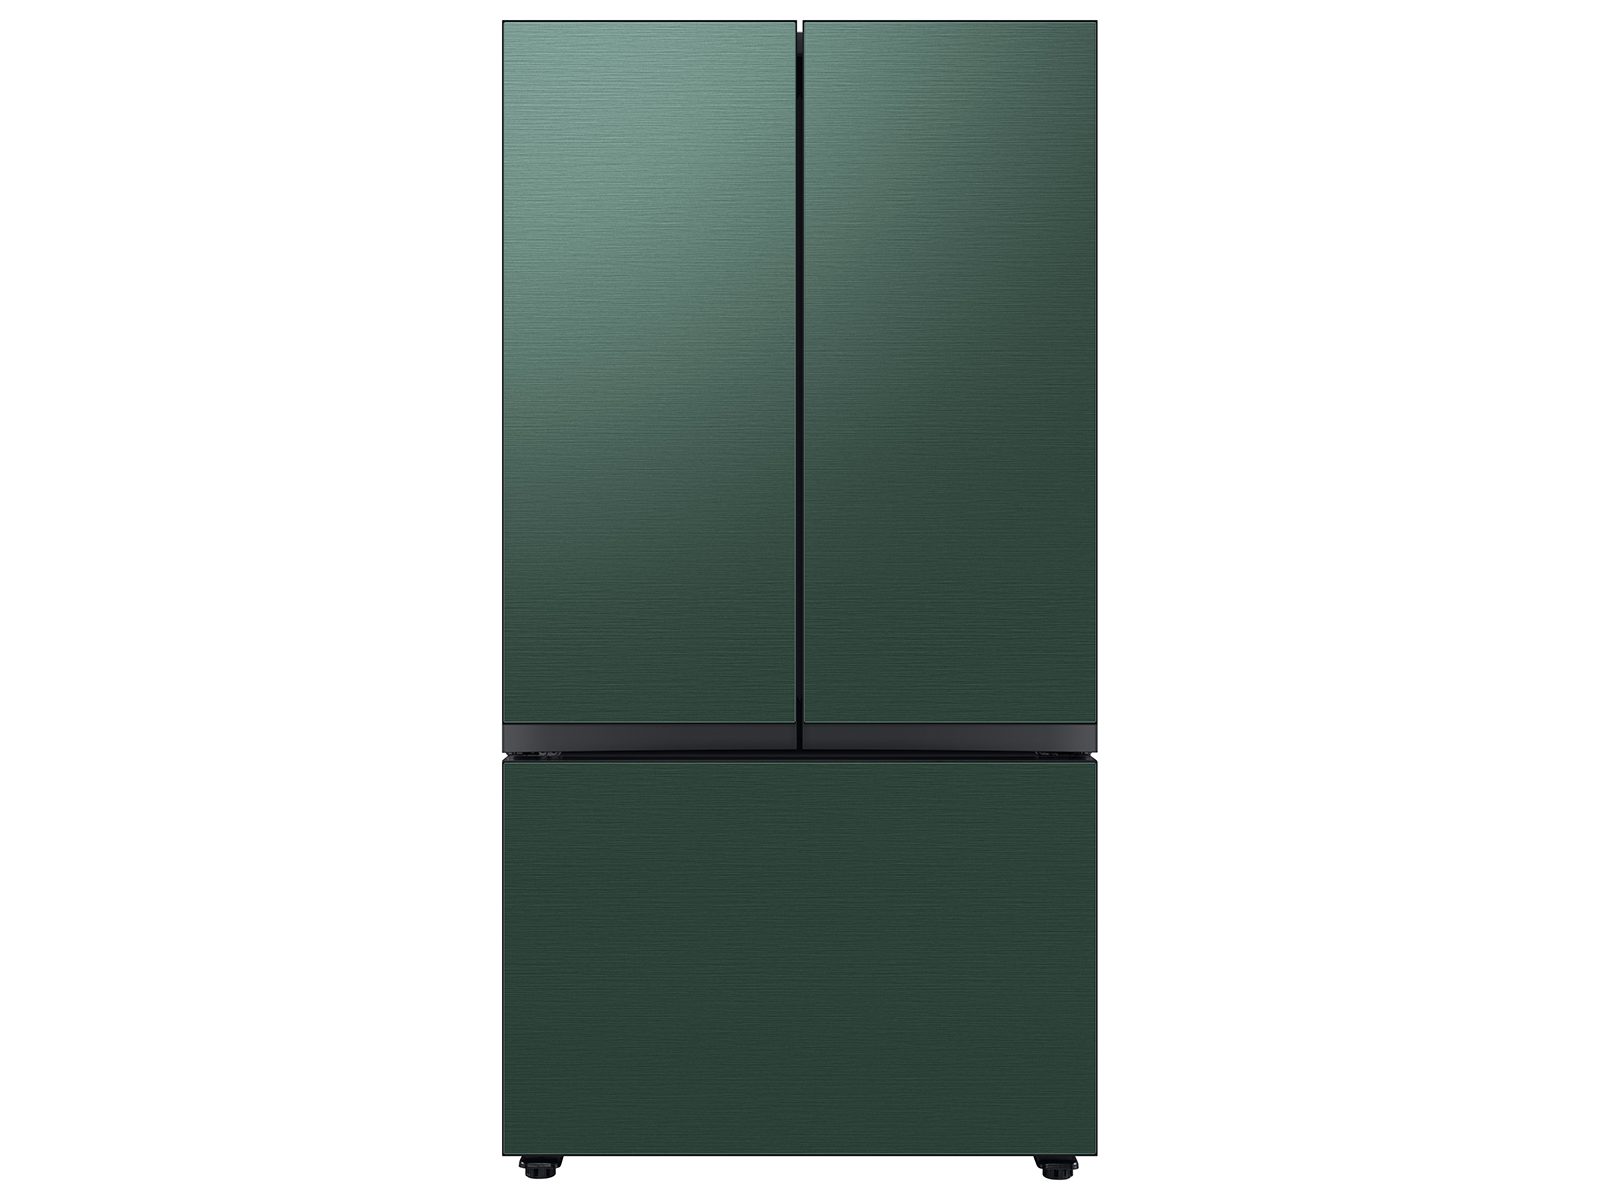 Samsung Bespoke 3-Door French Door Refrigerator in Stainless Steel (30 cu. ft.) with Beverage Center™ in Emerald Green Steel(BNDL-1650311467546)